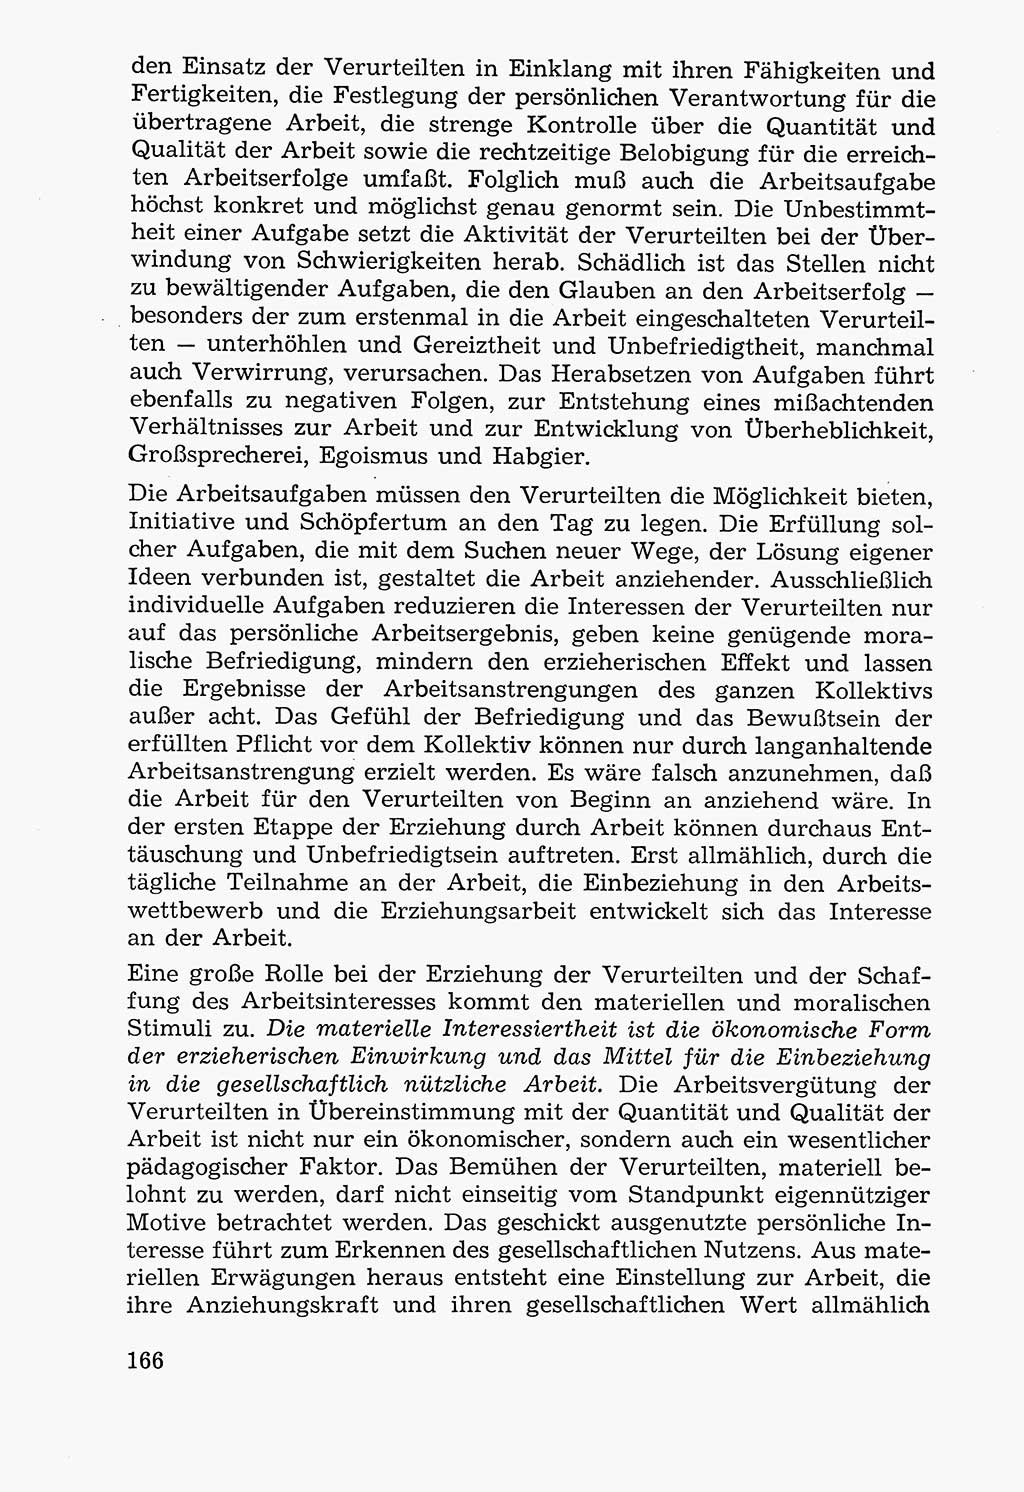 Lehrbuch der Strafvollzugspädagogik [Deutsche Demokratische Republik (DDR)] 1969, Seite 166 (Lb. SV-Pd. DDR 1969, S. 166)